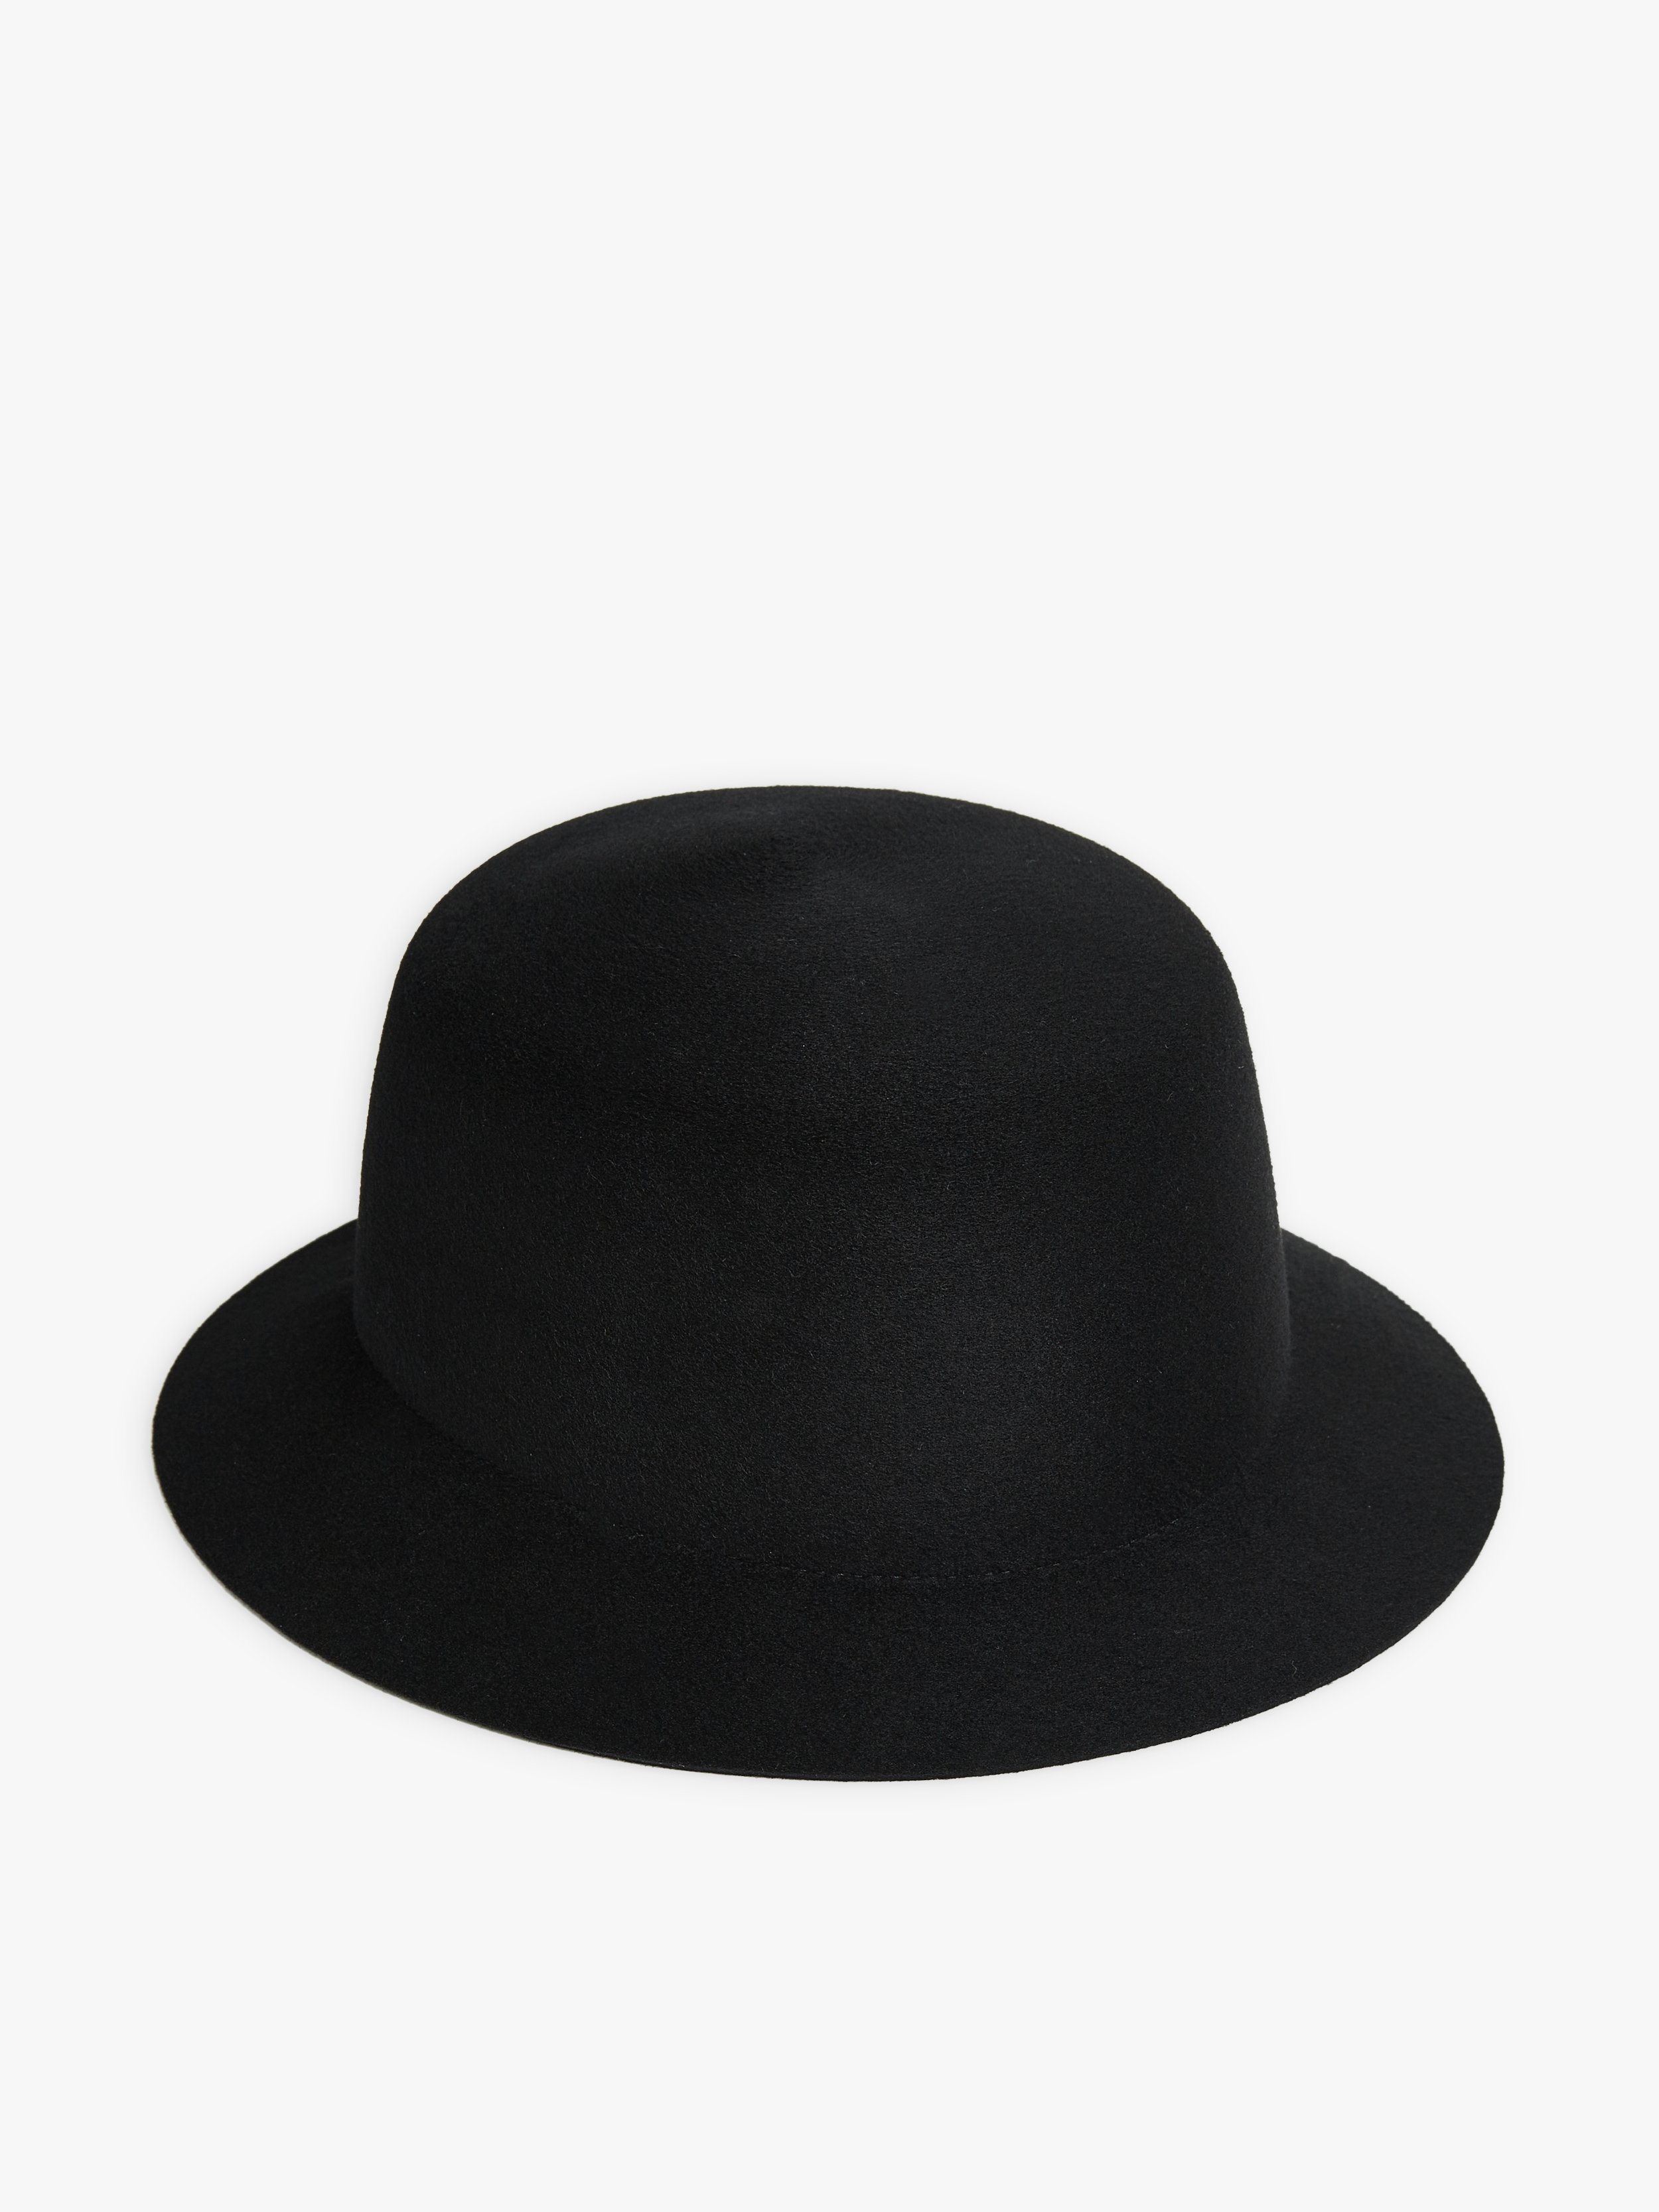 Acheter Chapeau d'hiver hommes femmes pull chapeau écharpe costume